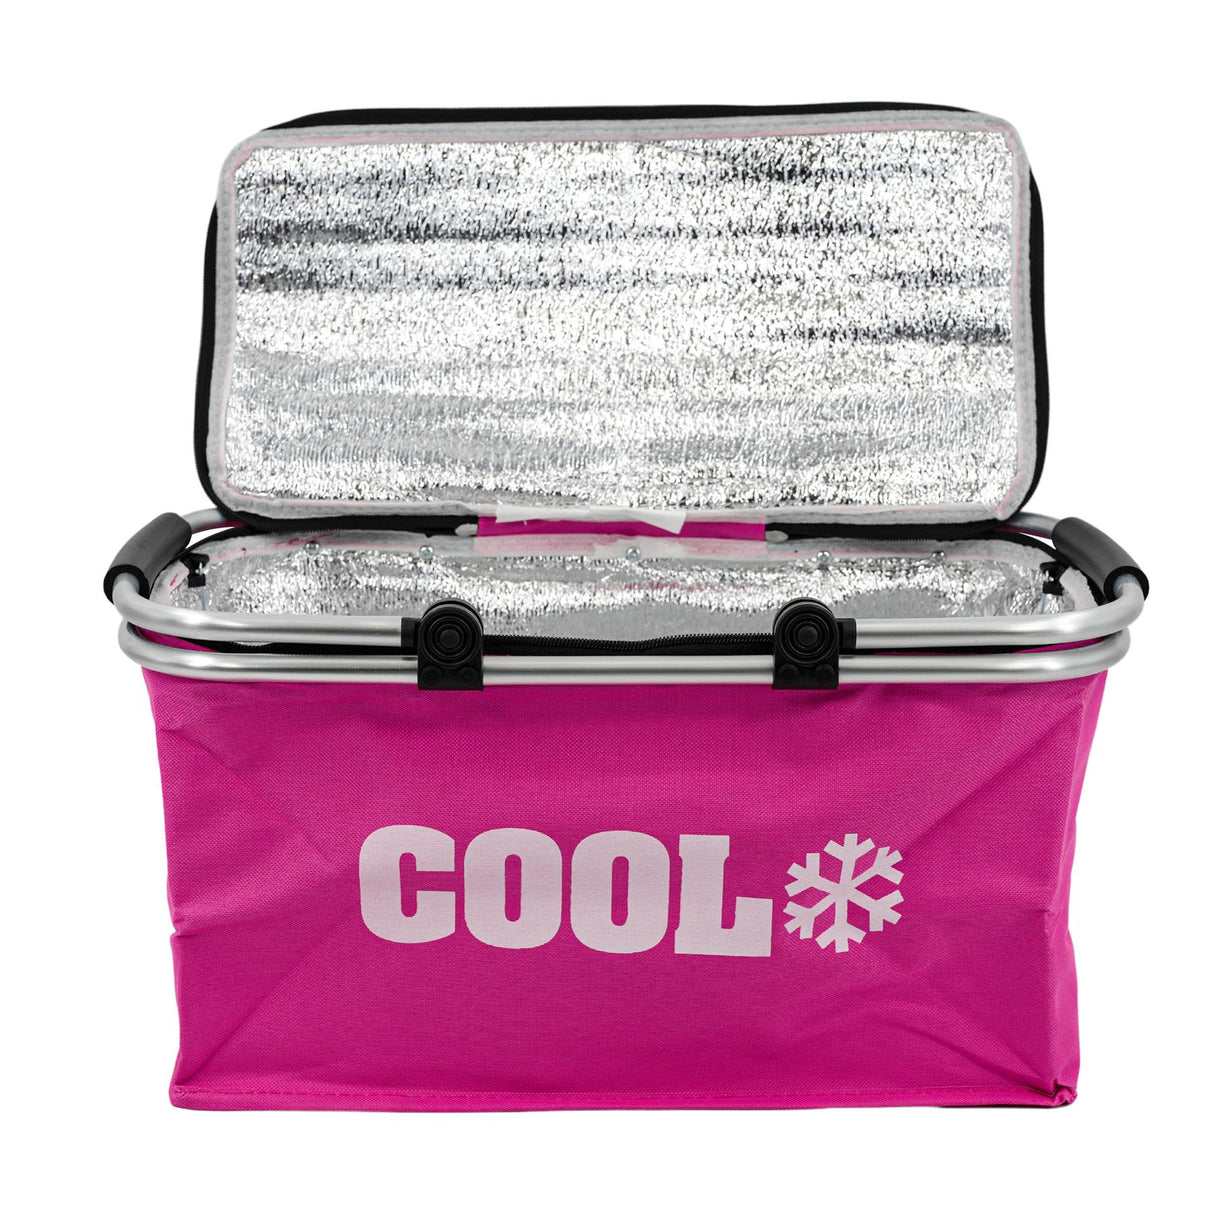 Pink Cooler Basket Bag by Geezy - UKBuyZone